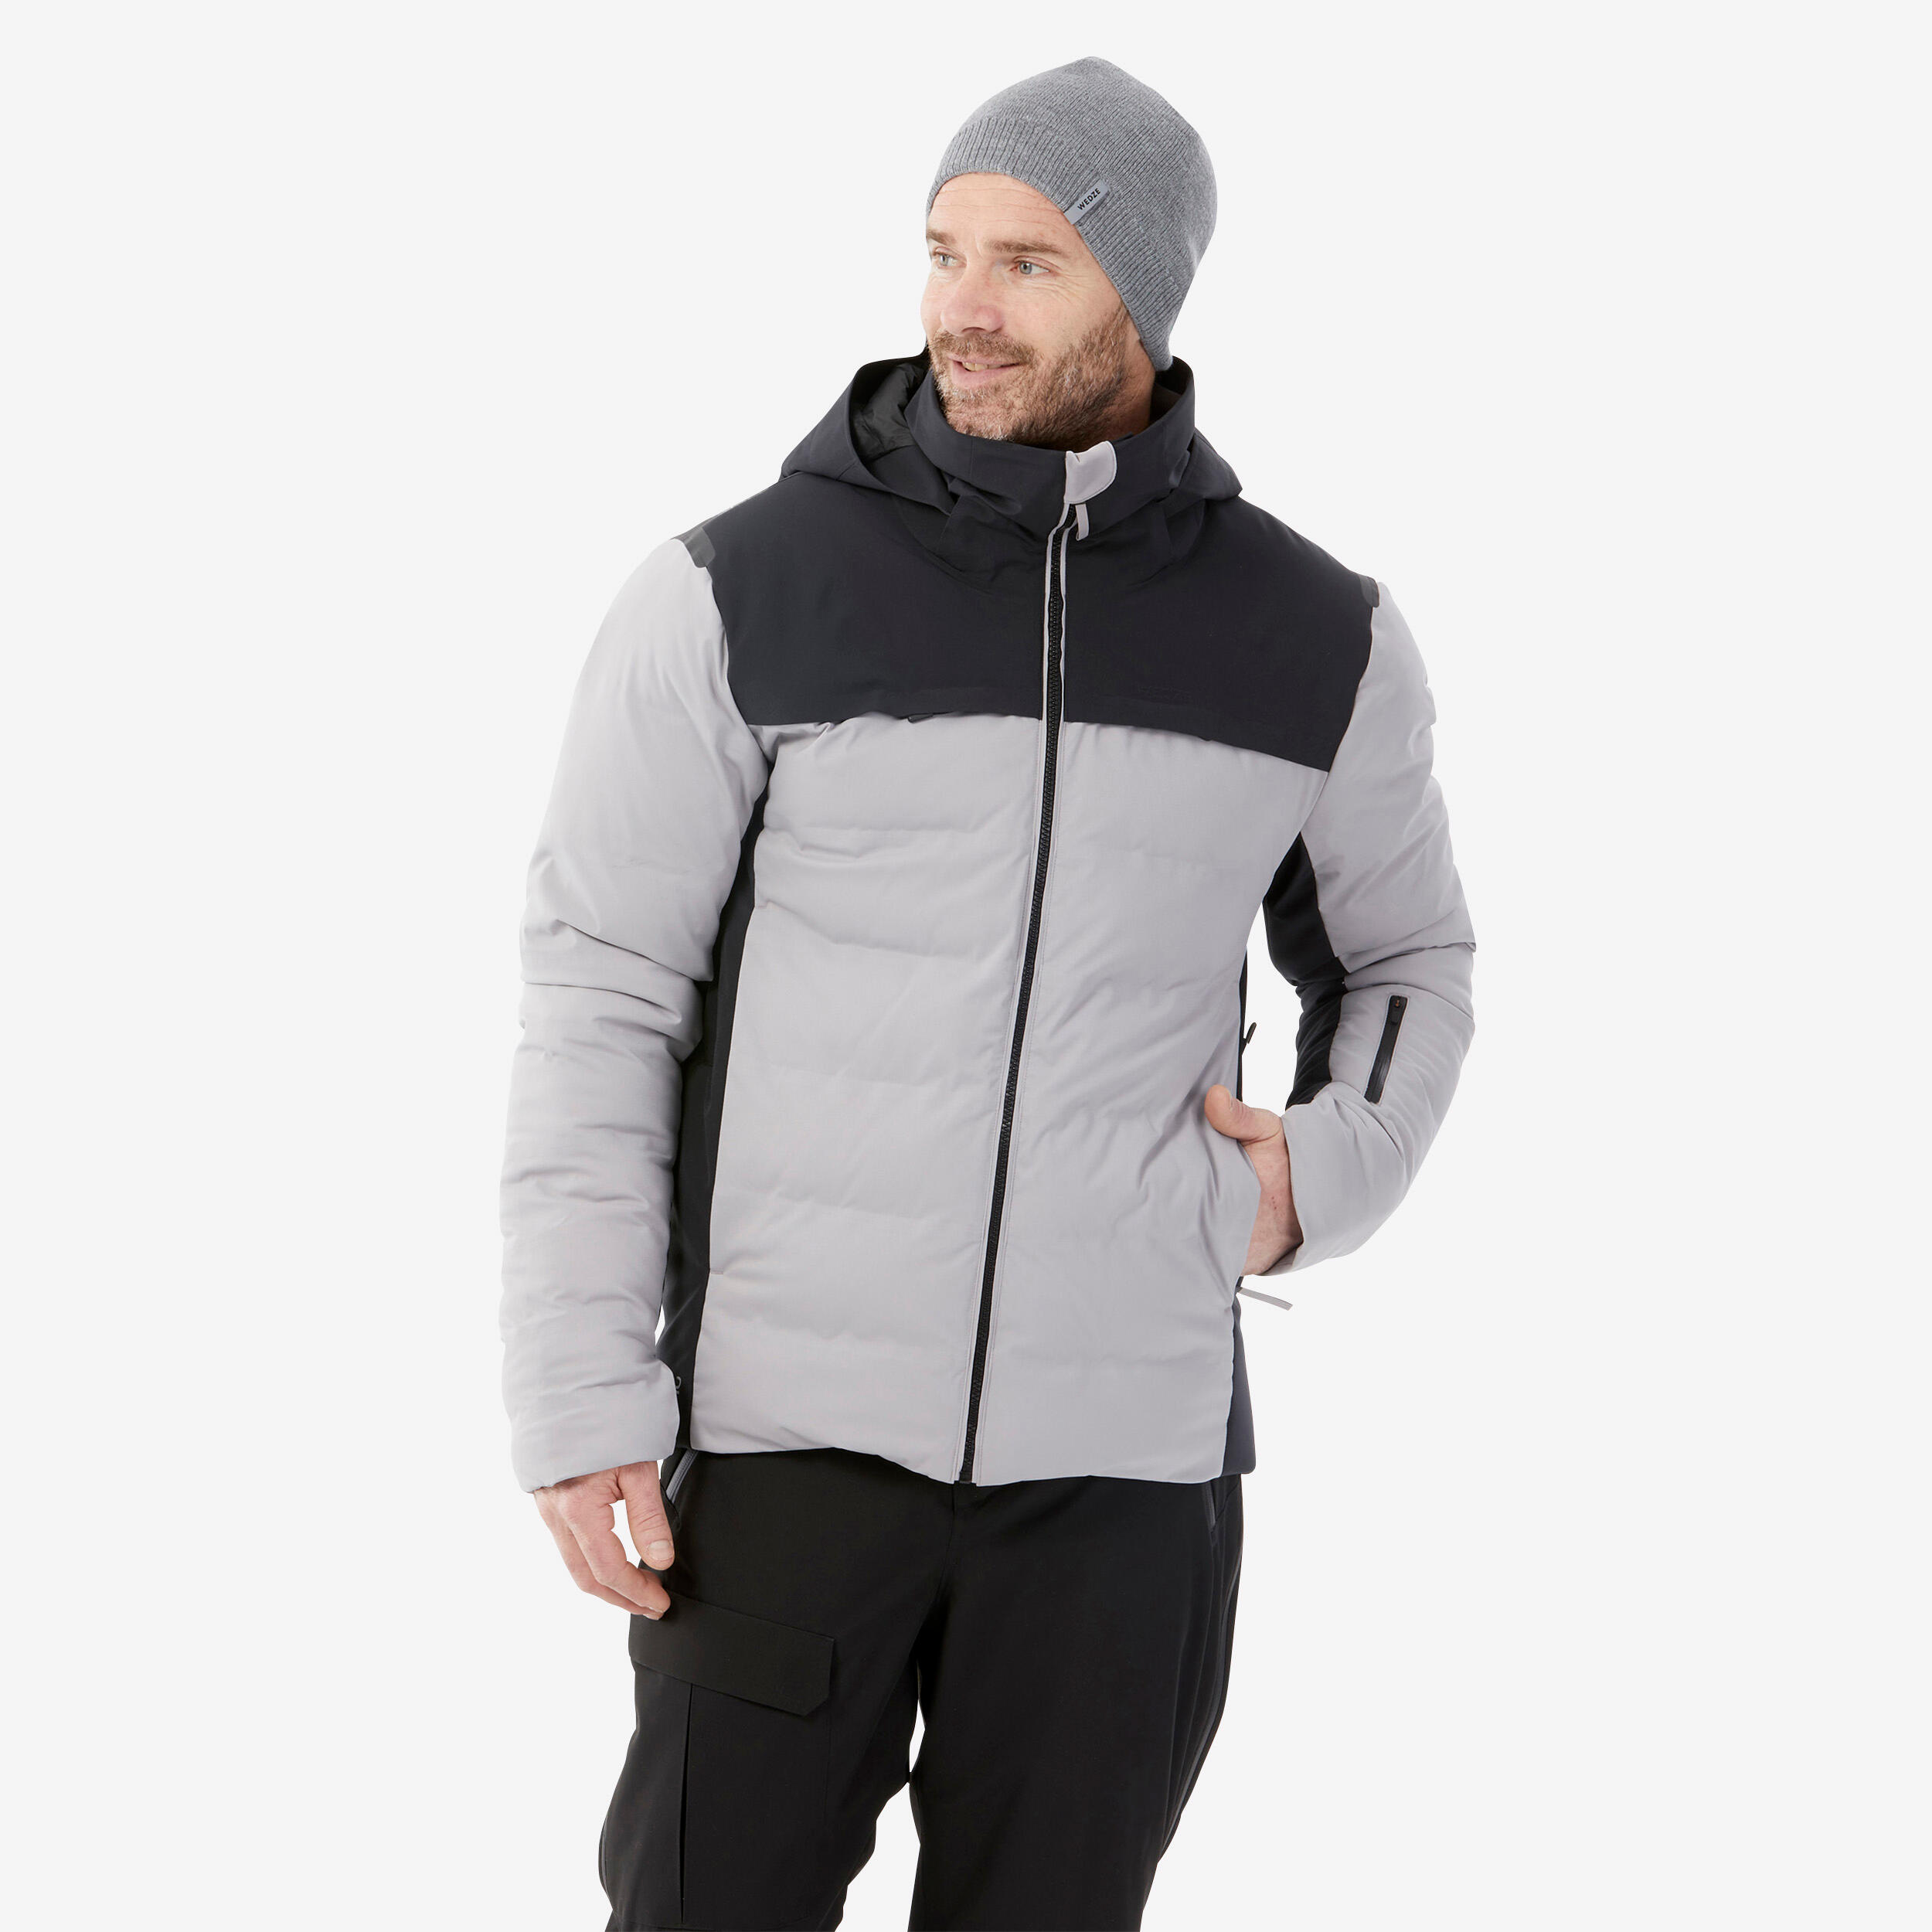 doudoune de ski chaude homme 900 warm - gris et noir - wedze